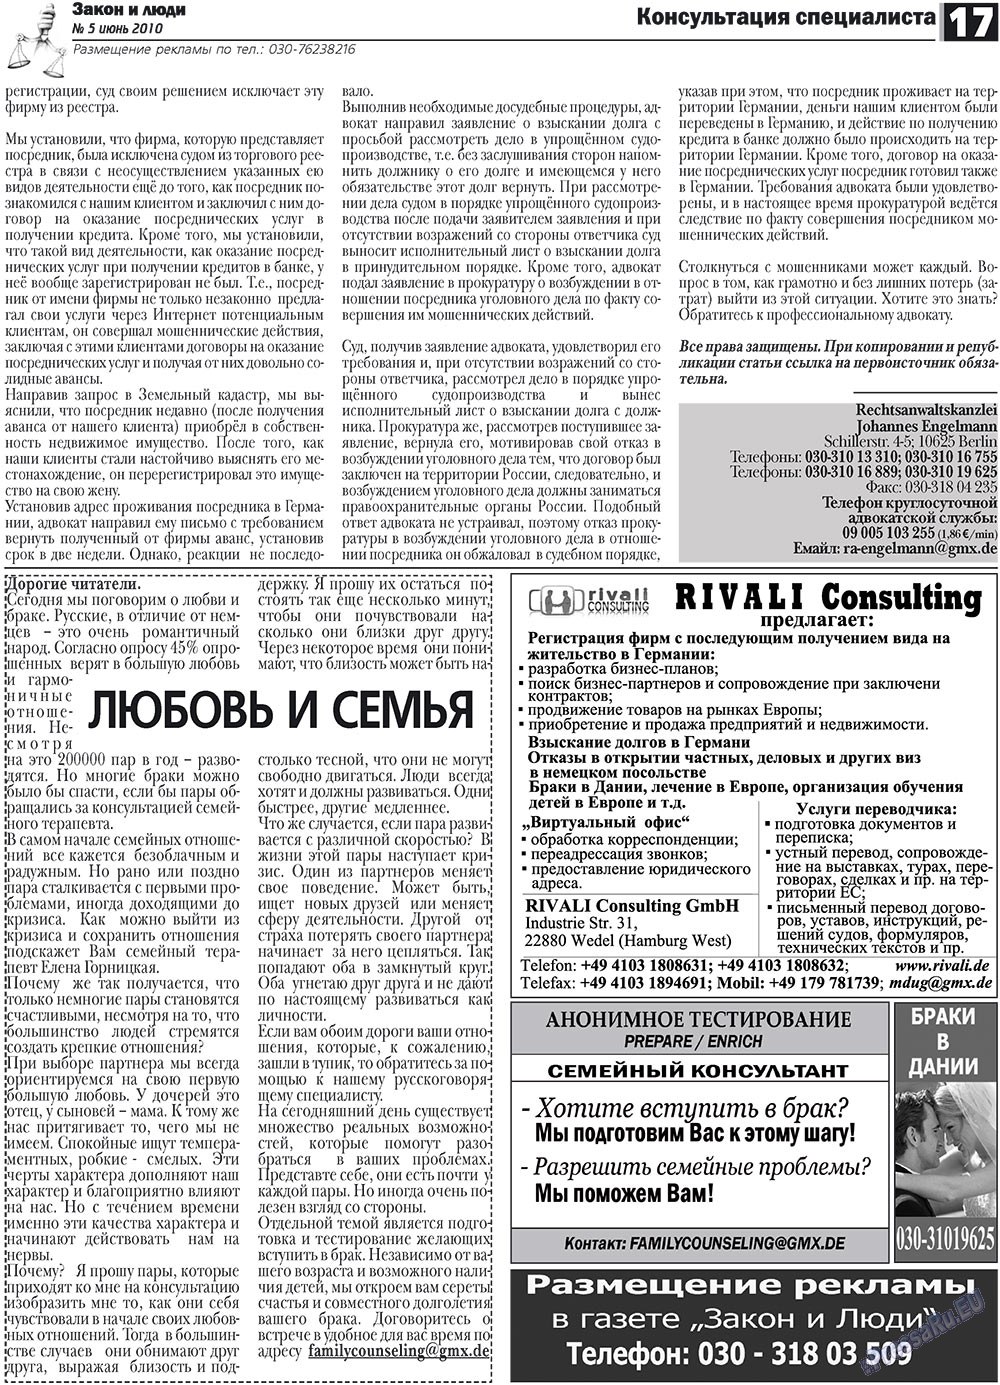 Закон и люди, газета. 2010 №5 стр.17